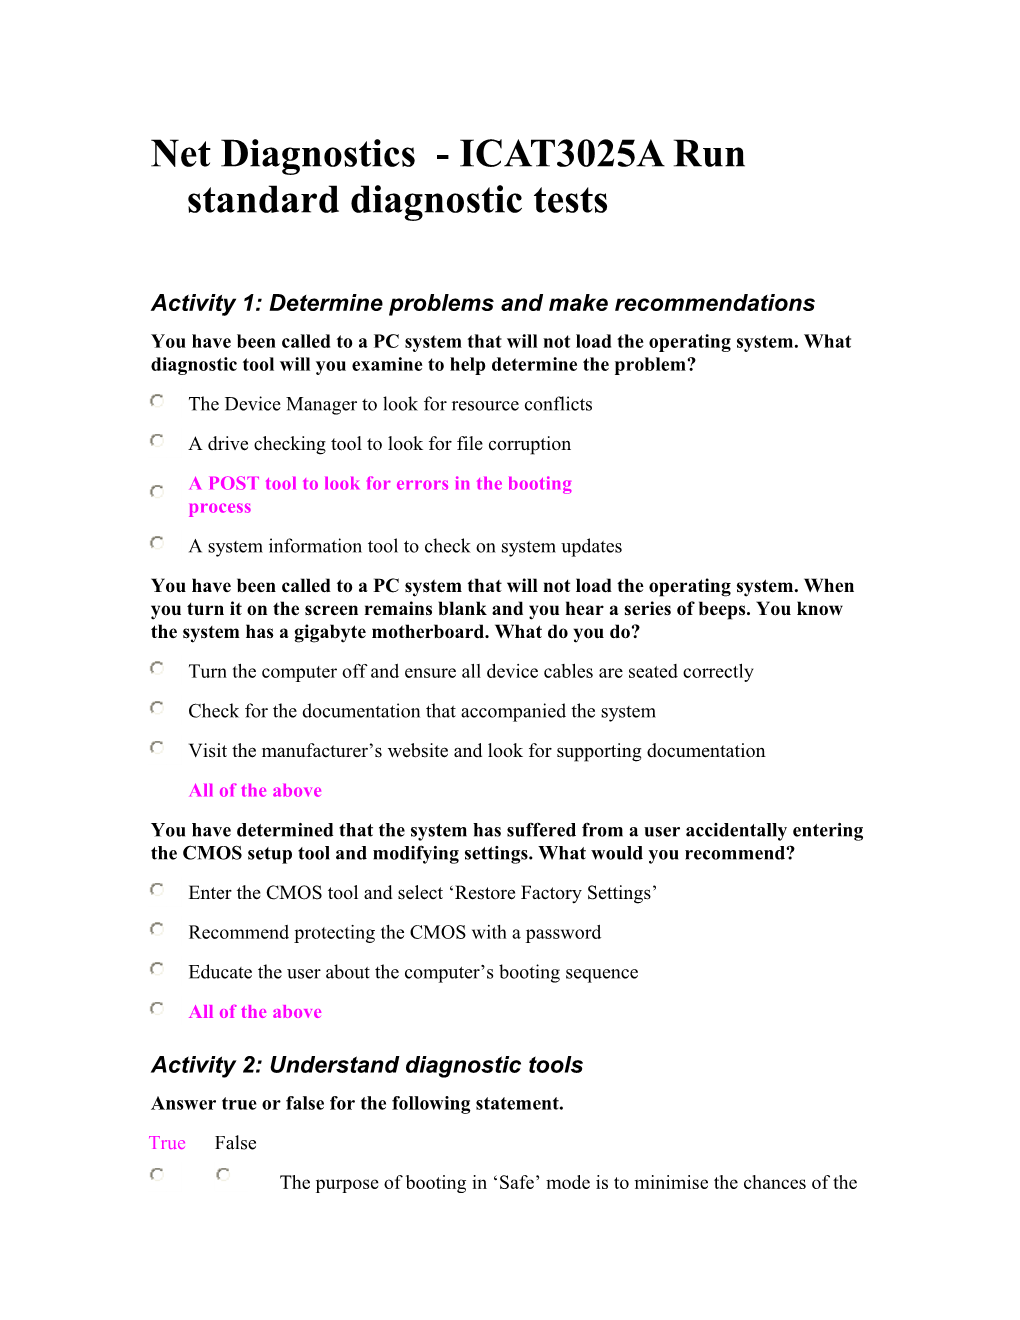 Net Diagnostics - ICAT3025A Run Standard Diagnostic Tests